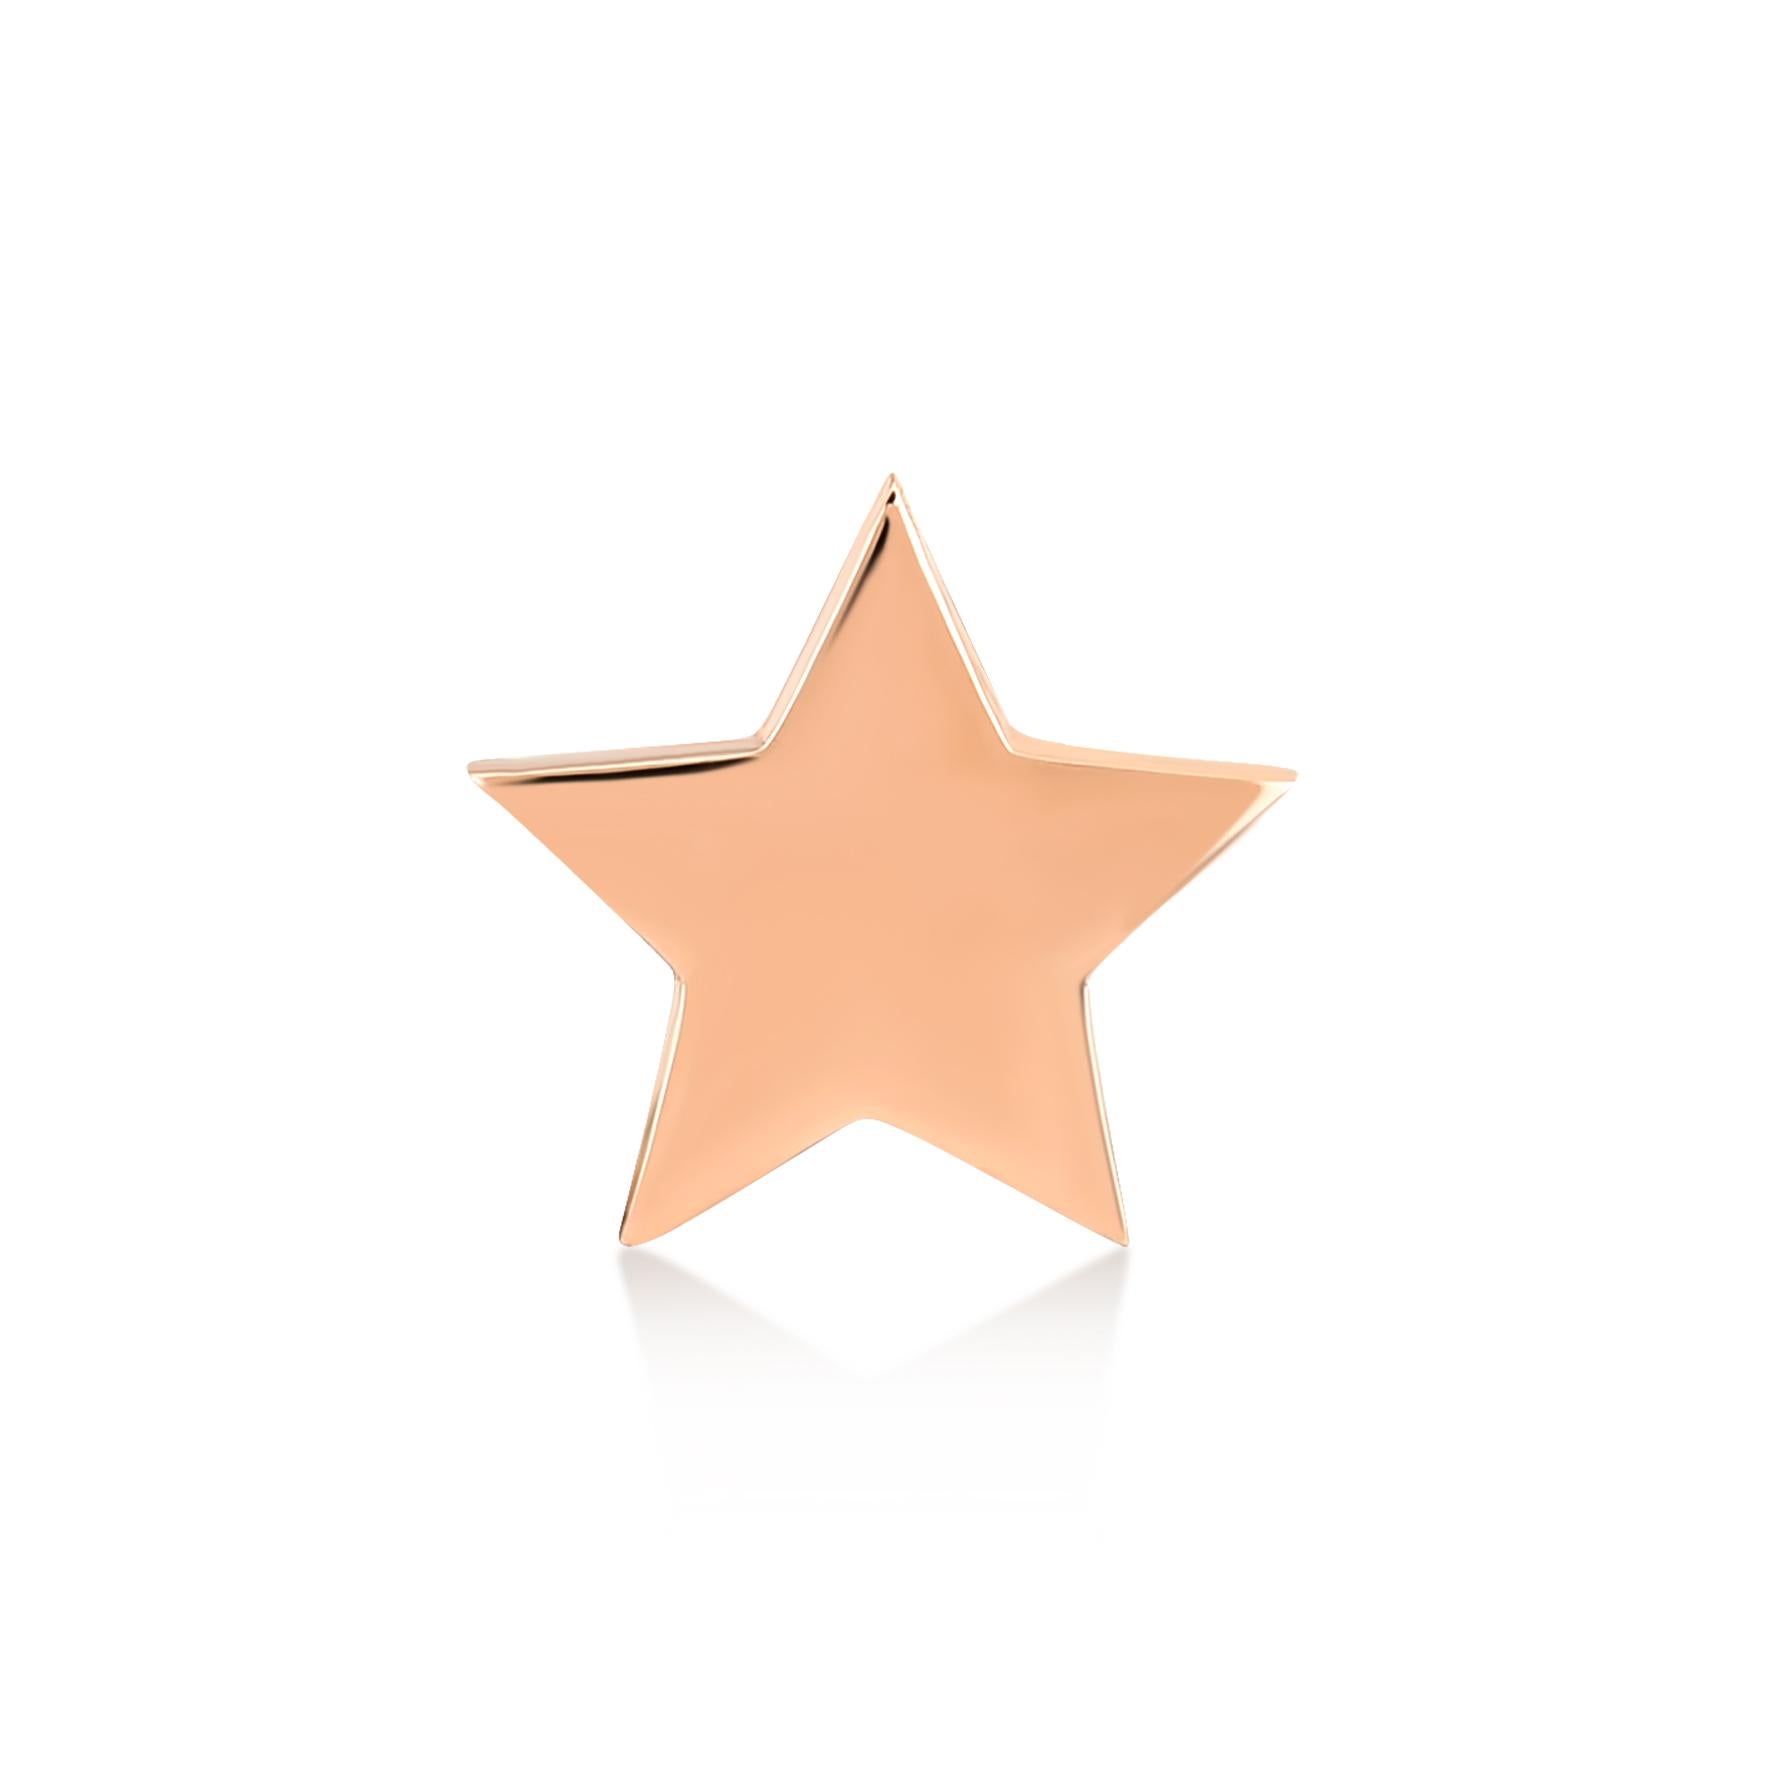 Petit clou d'oreille étoile (simple) en or rose 14k par Selda Jewellery

Informations complémentaires:-
Collection : Collection 